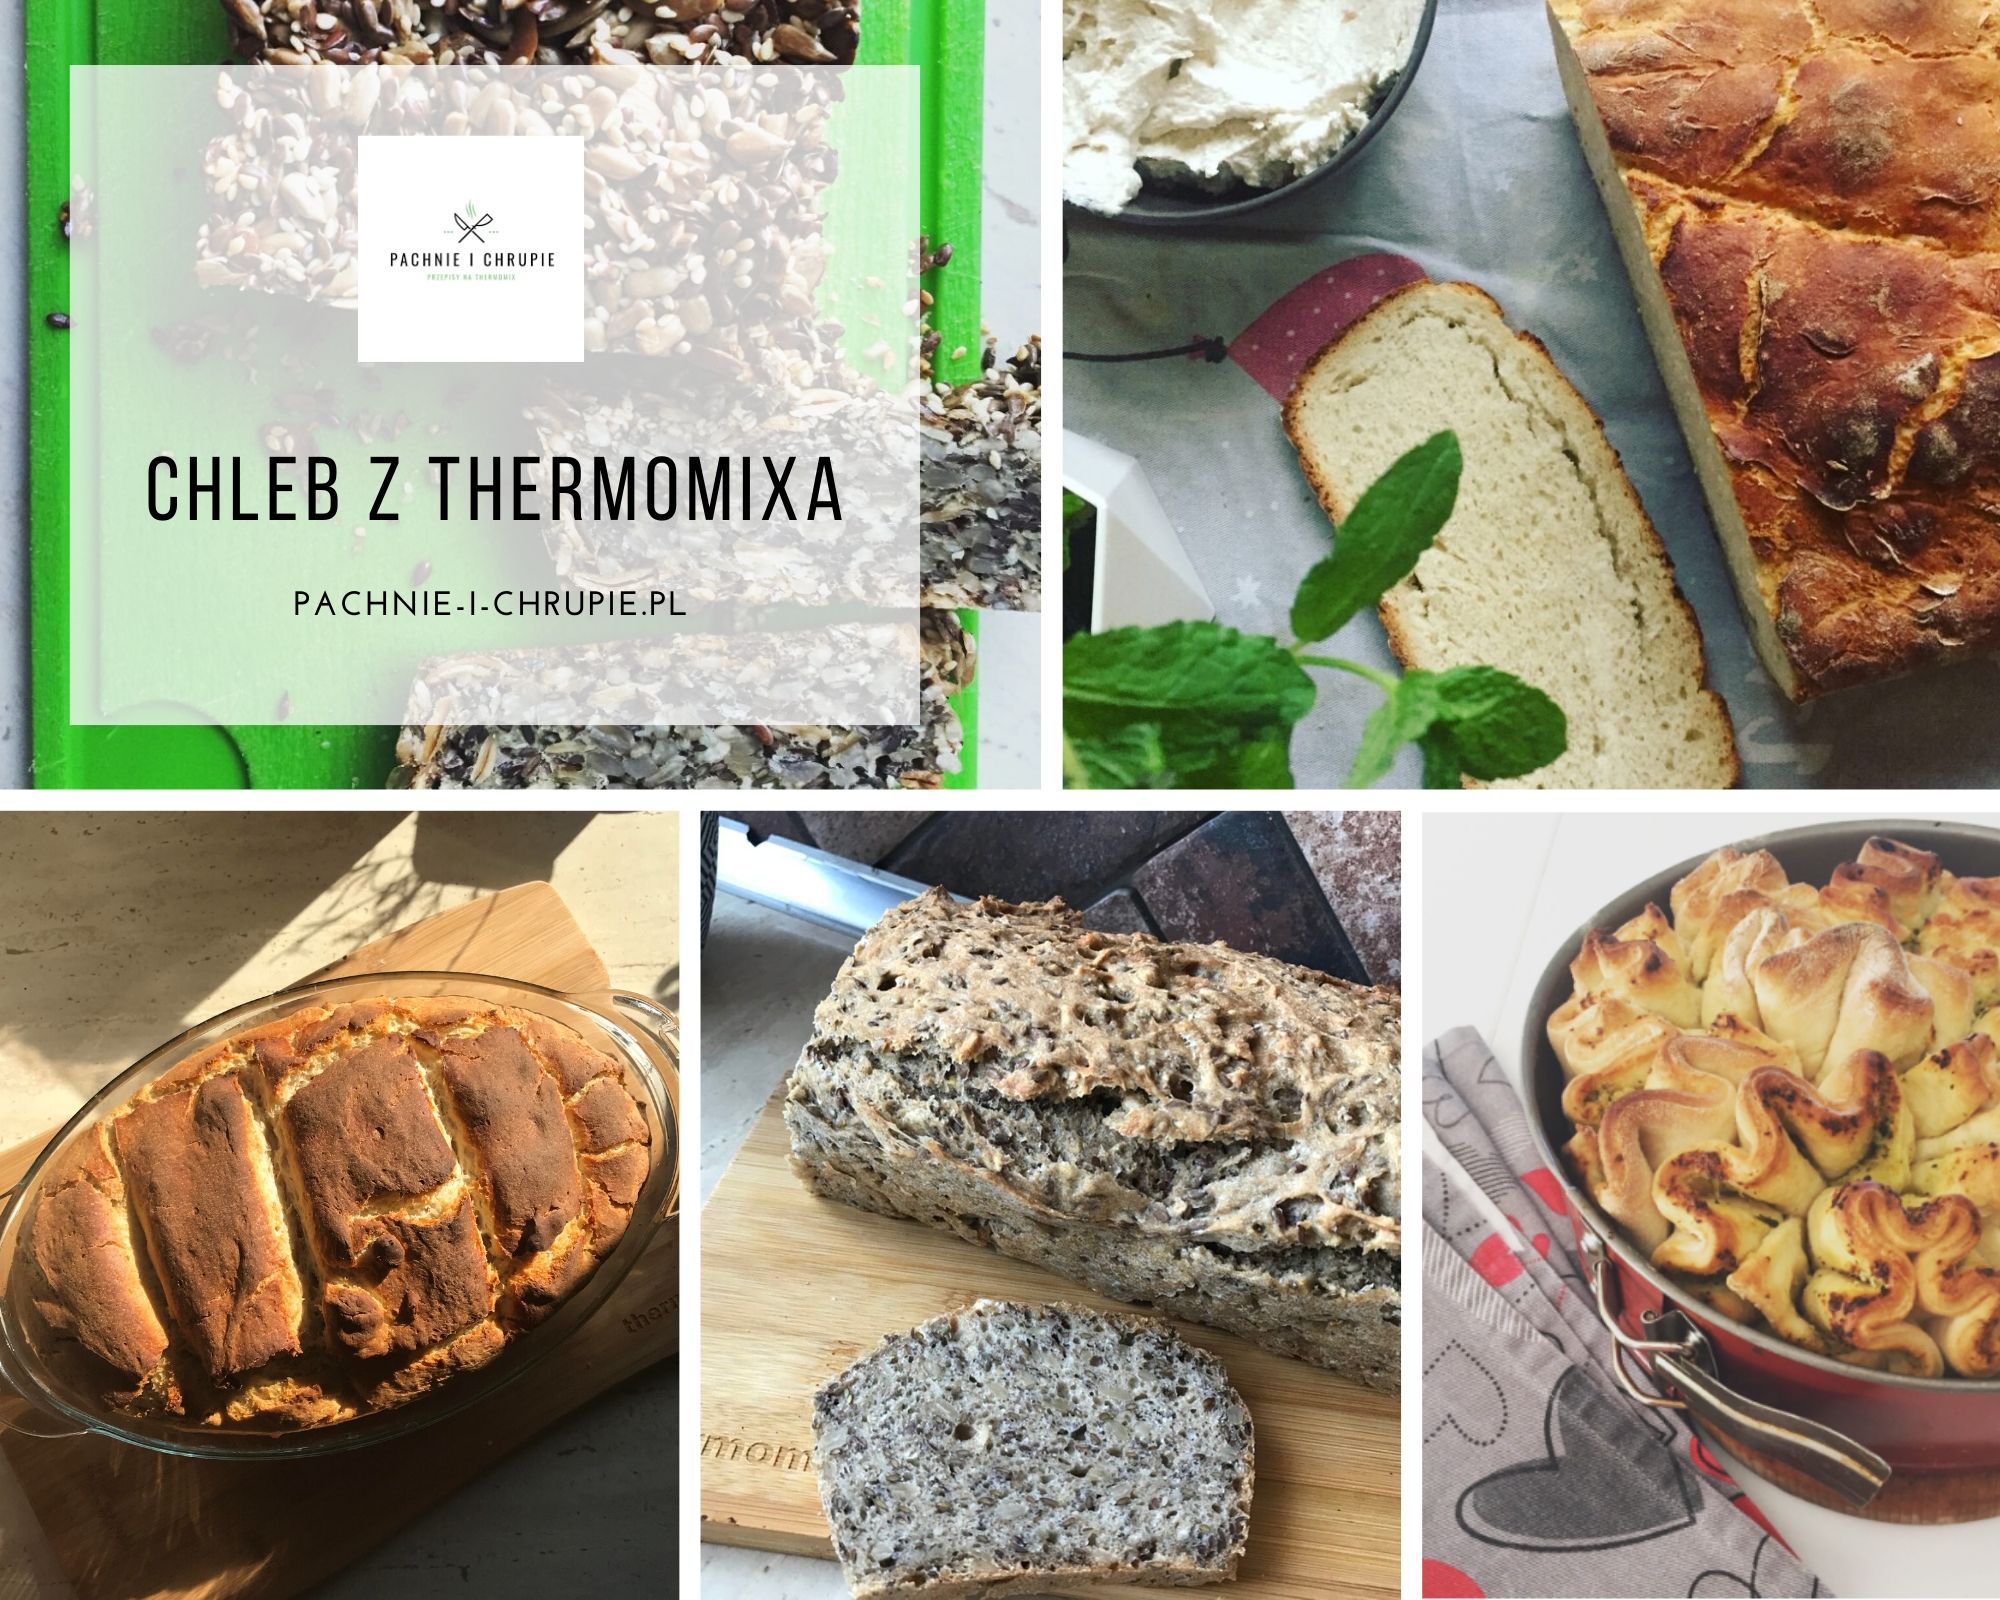 Chleb Thermomix - ziołowy, z gara, bananowy, na drożdżach i zakwasie. Który przepis wybrać?